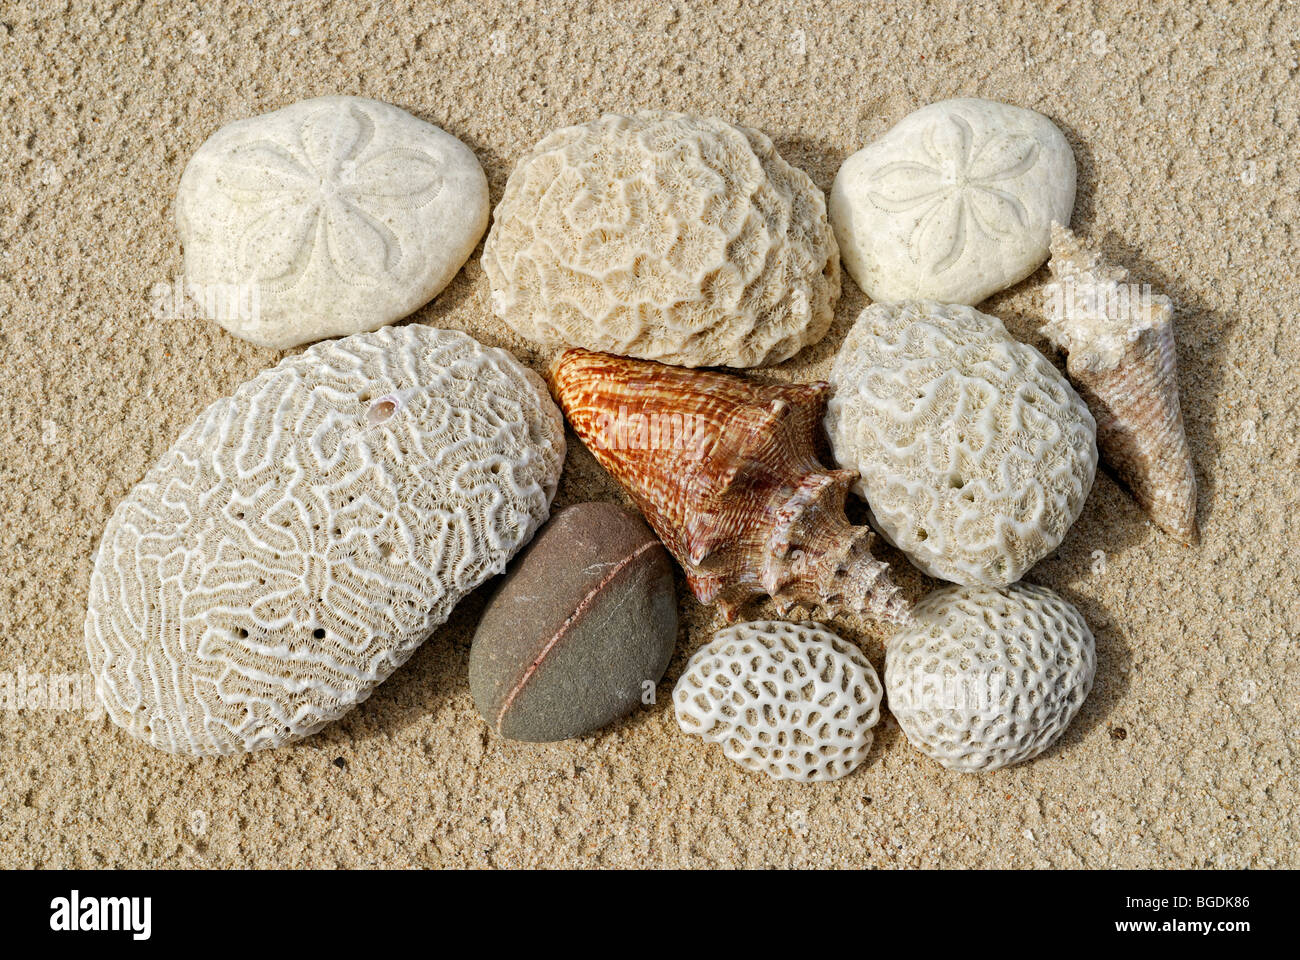 Beach conclut, coraux, coquillages, oursins sheels et pierre, l'île Sainte-Croix, îles Vierges américaines, United States Banque D'Images